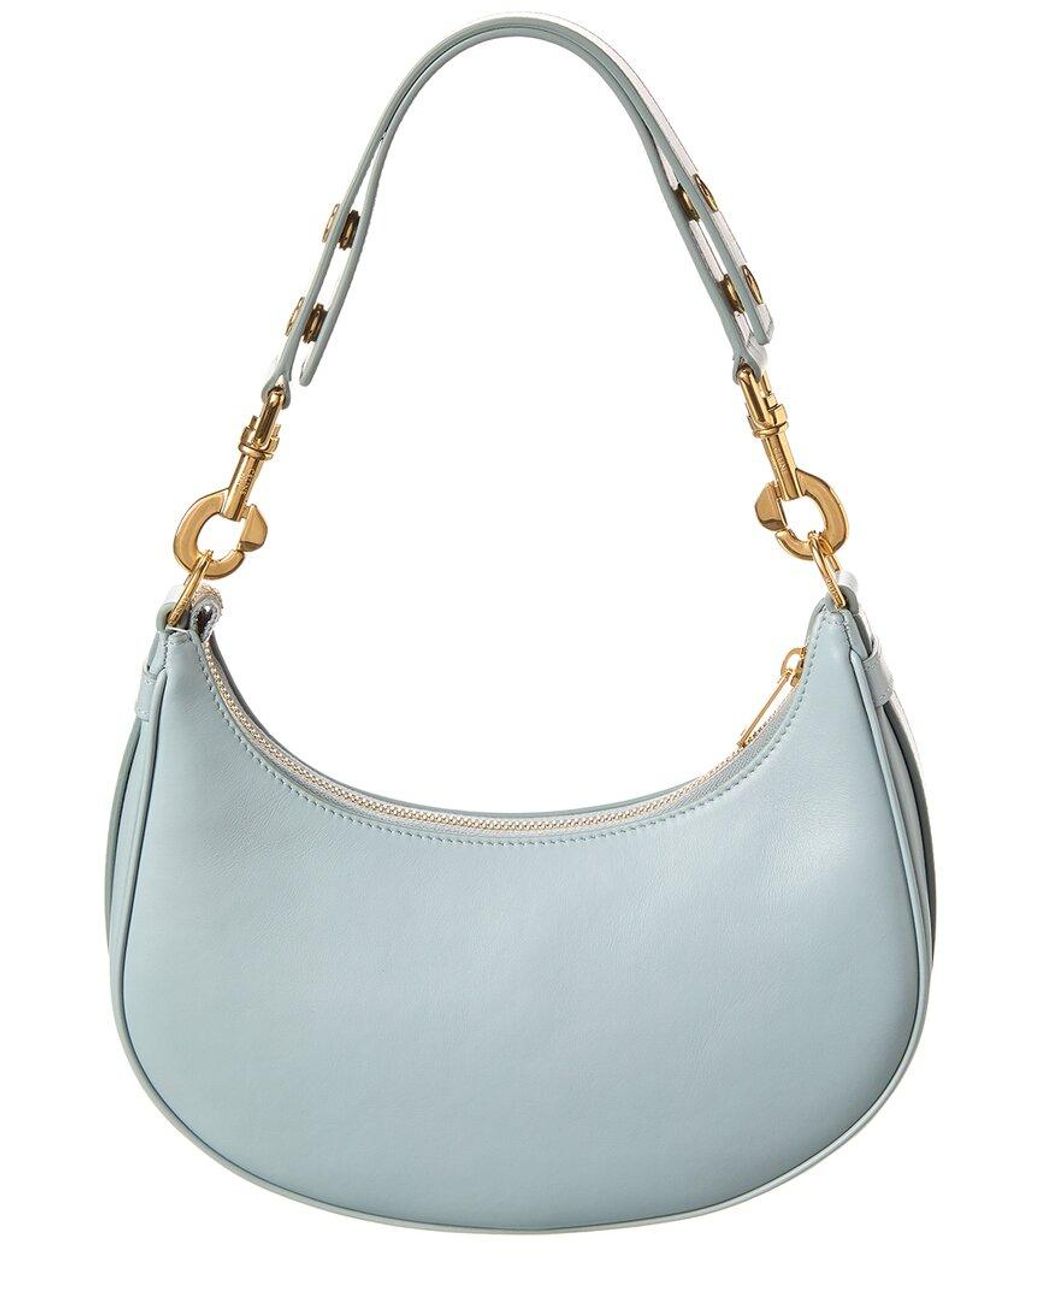 Celine Ava Medium Leather Hobo Bag in Blue | Lyst